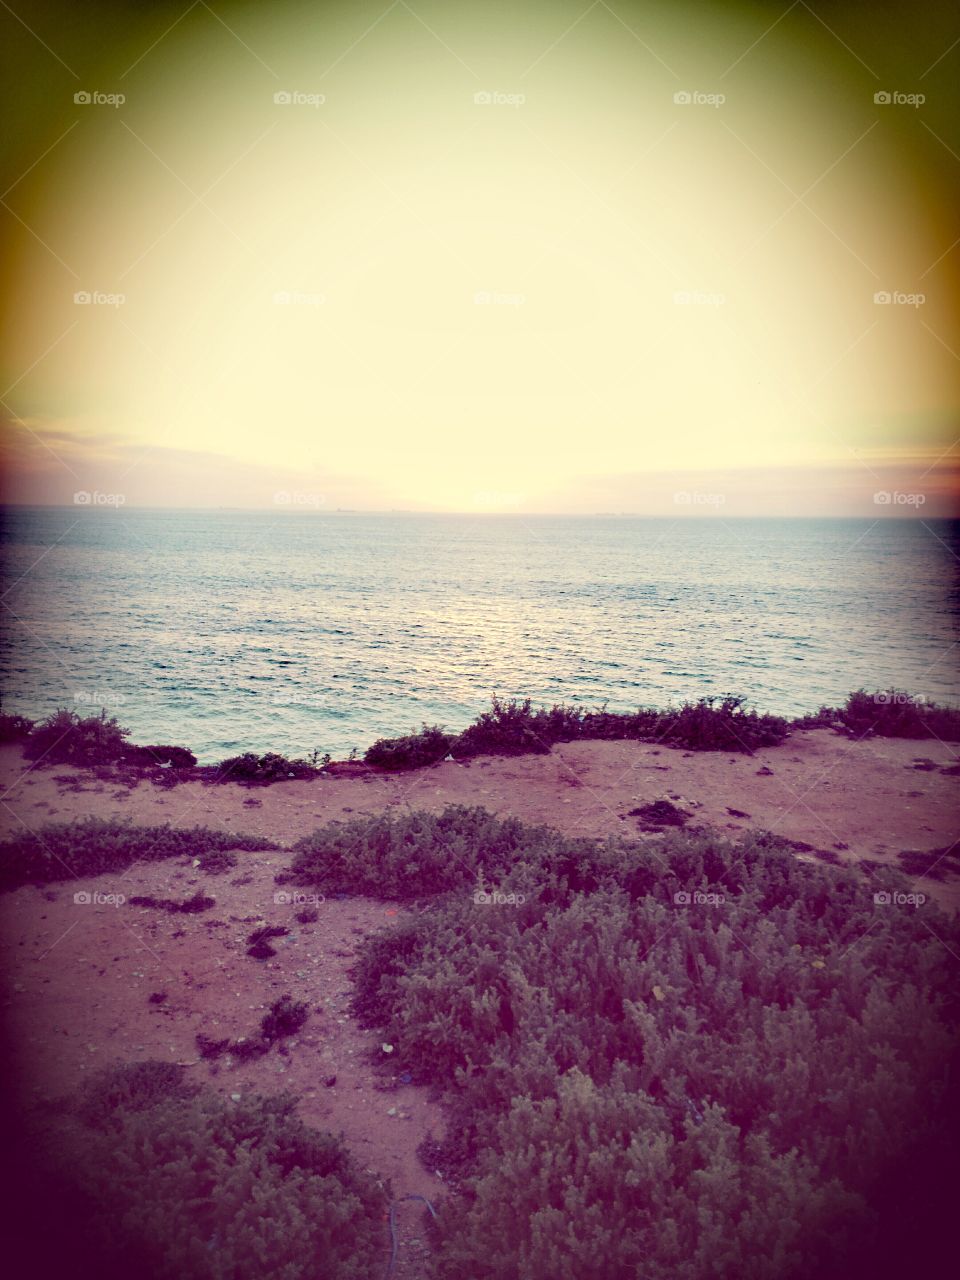 grass,view,sea,sunset